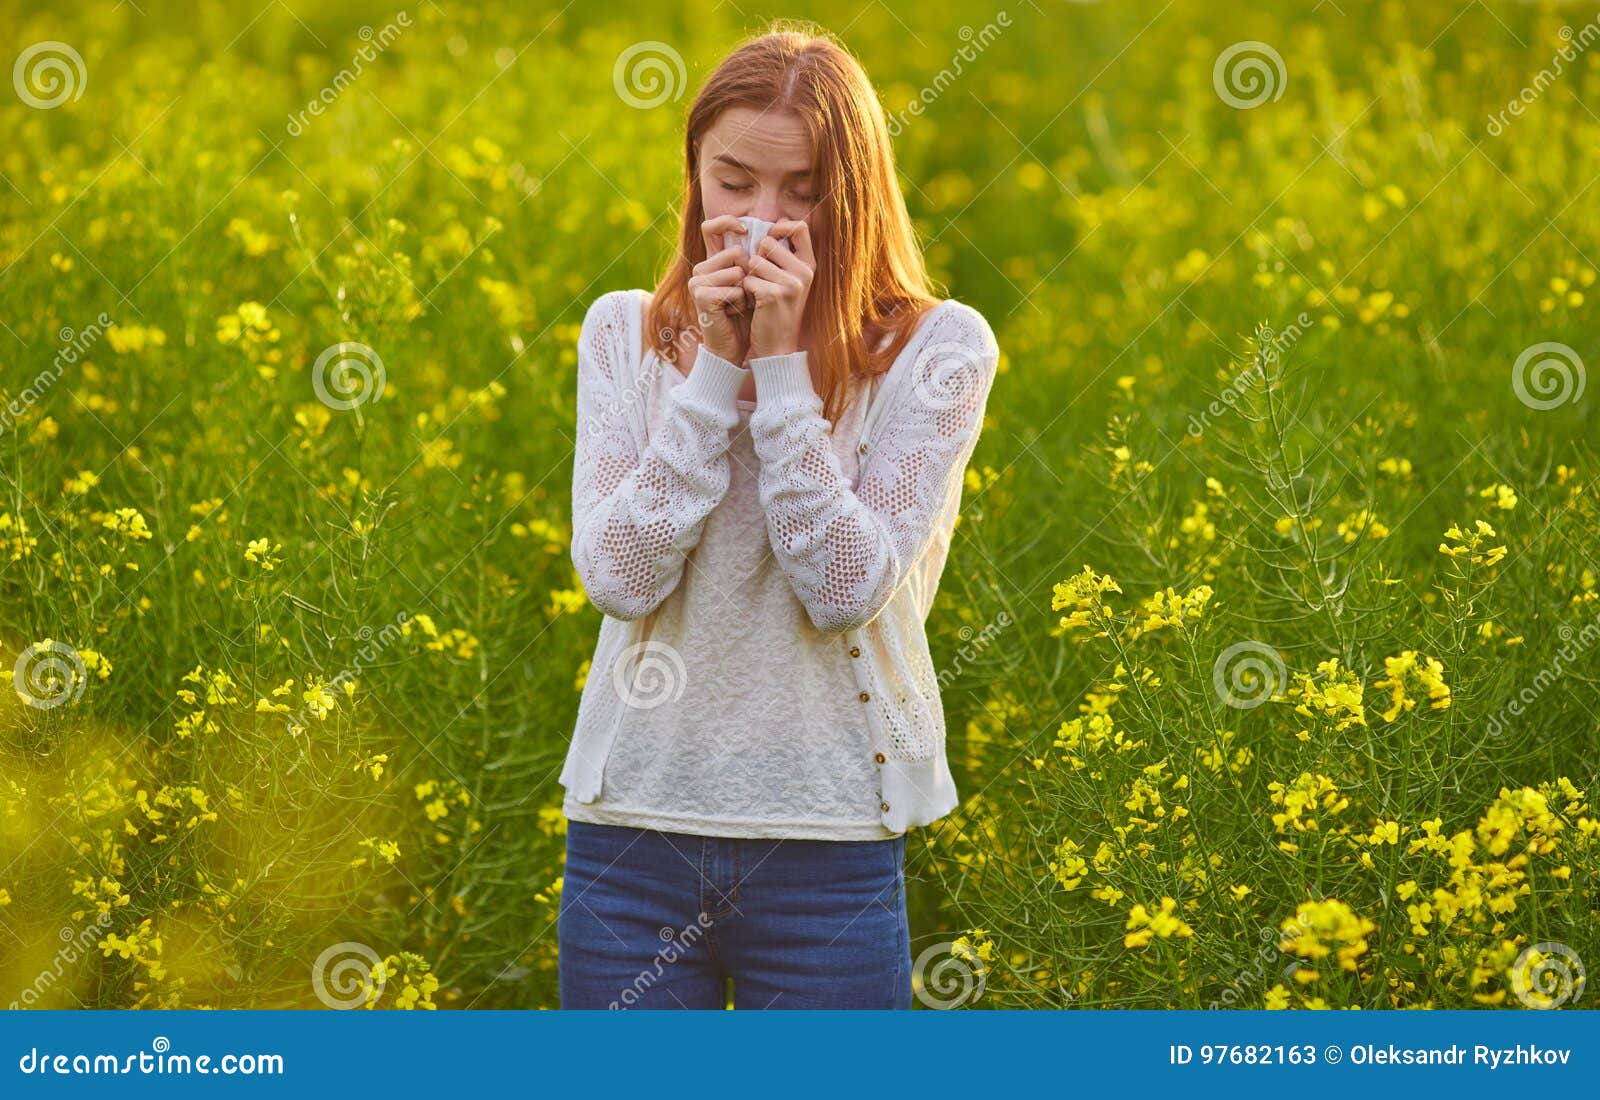 花粉过敏概念 少妇打喷嚏 开花的树在背景中 库存照片. 图片 包括有 花粉, 开花, 女性, 室外, 翠菊 - 137855912